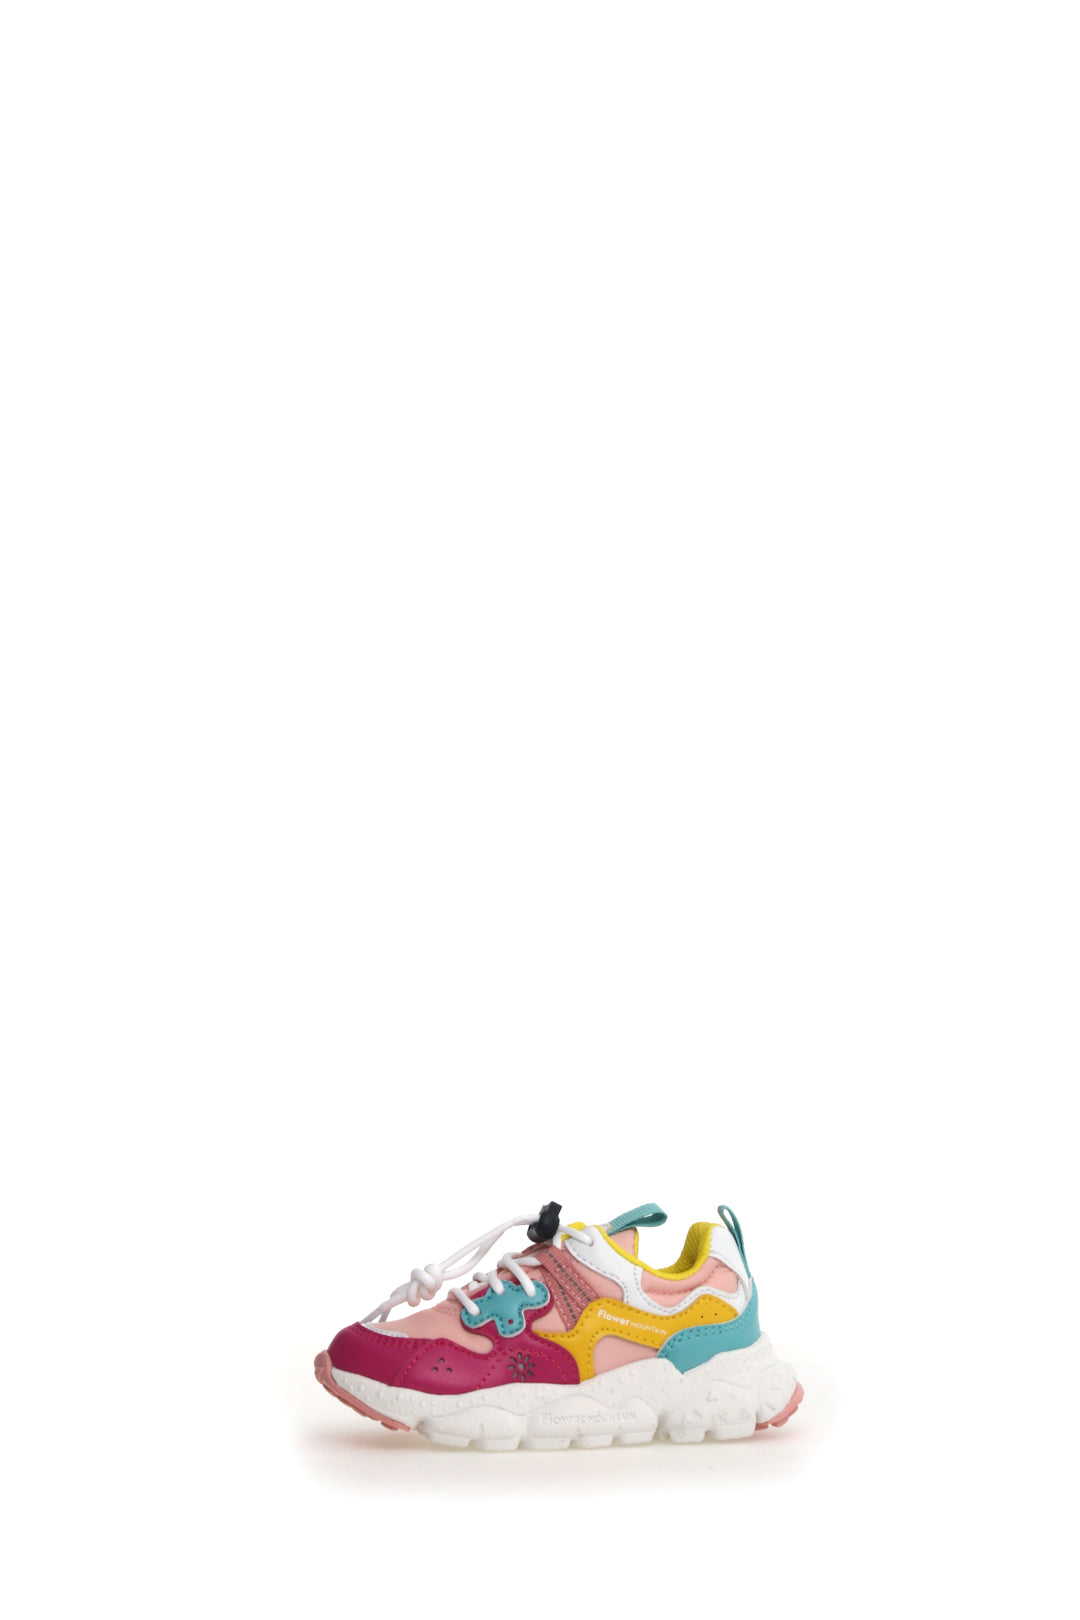 Sneakers Yamano 3 Junior E-Calf / Nylon Fuchsia / Cipria / Yellow / Green